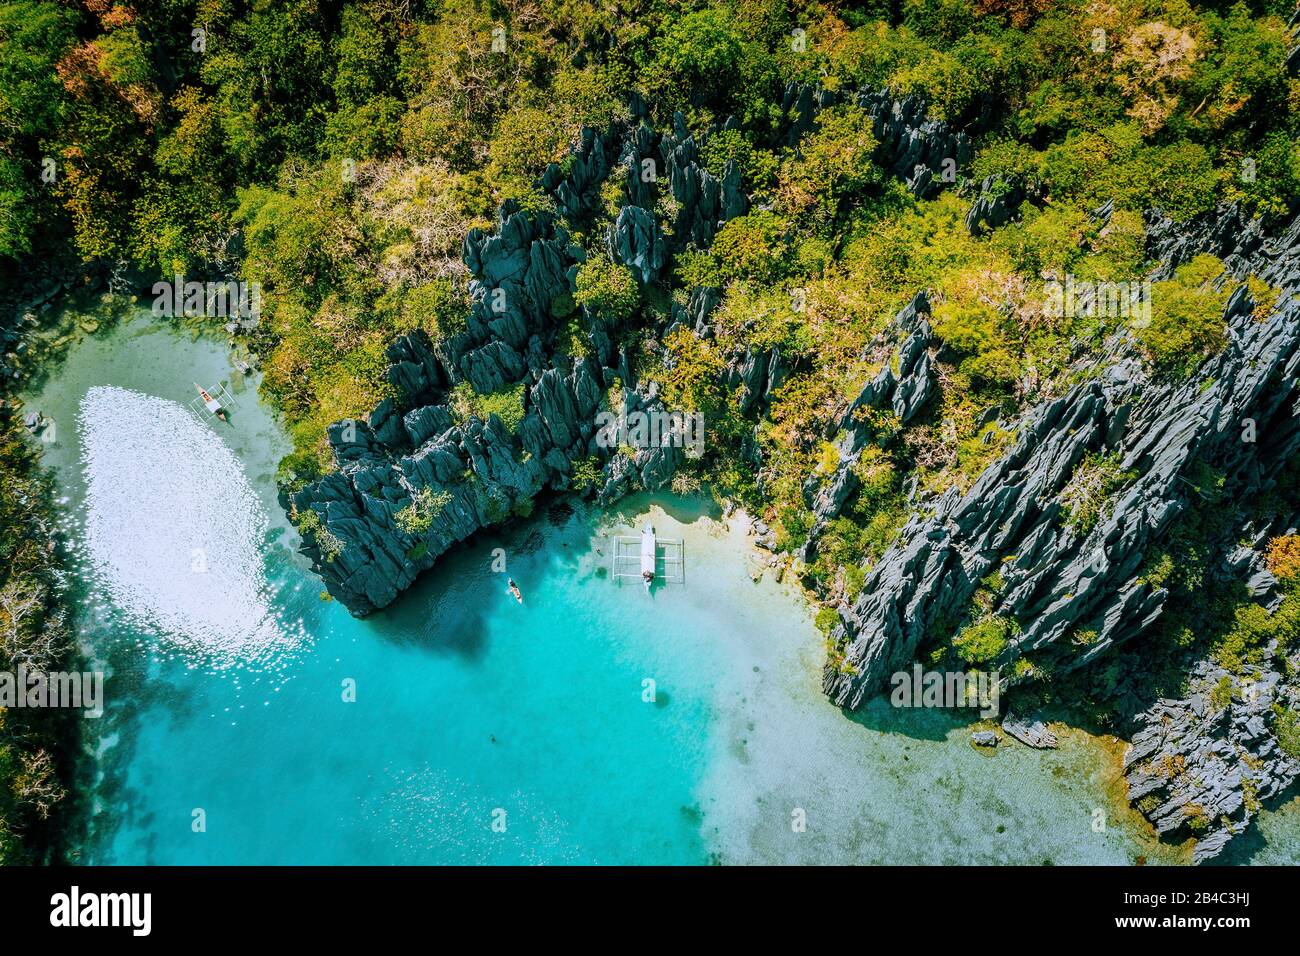 Réserve marine El Nido Palawan Philippines, vue aérienne du paradis tropical, lagon turquoise et falaises de calcaire vives. Banque D'Images